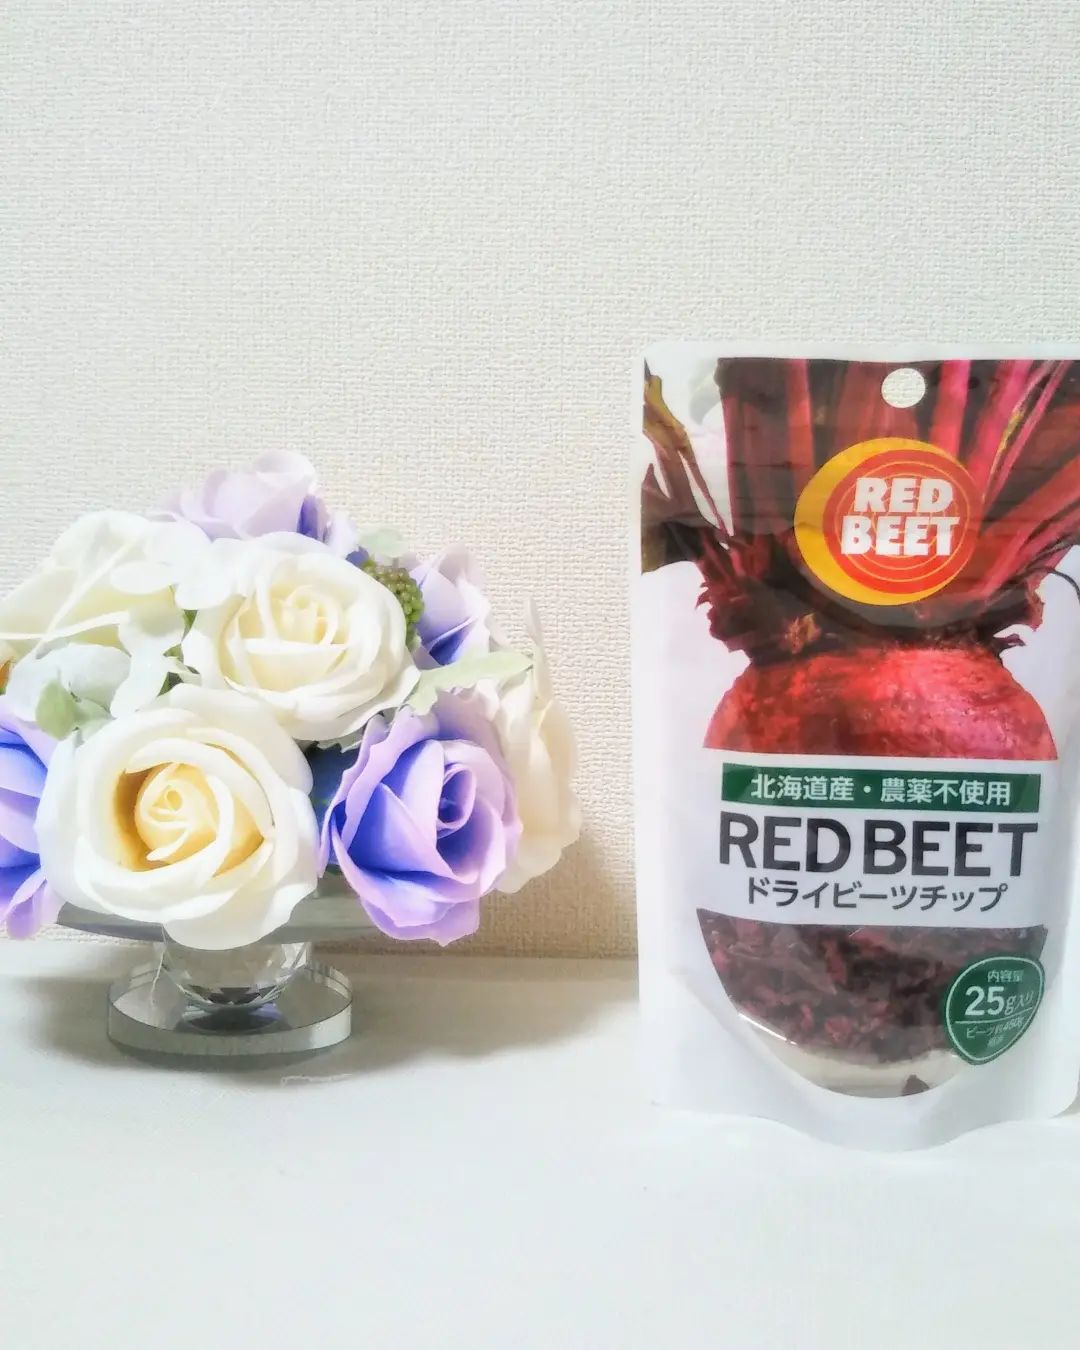 口コミ投稿：塩水港精糖株式会社さんの【RED BEET ドライビーツチップ】を食べてみました！豊富な…